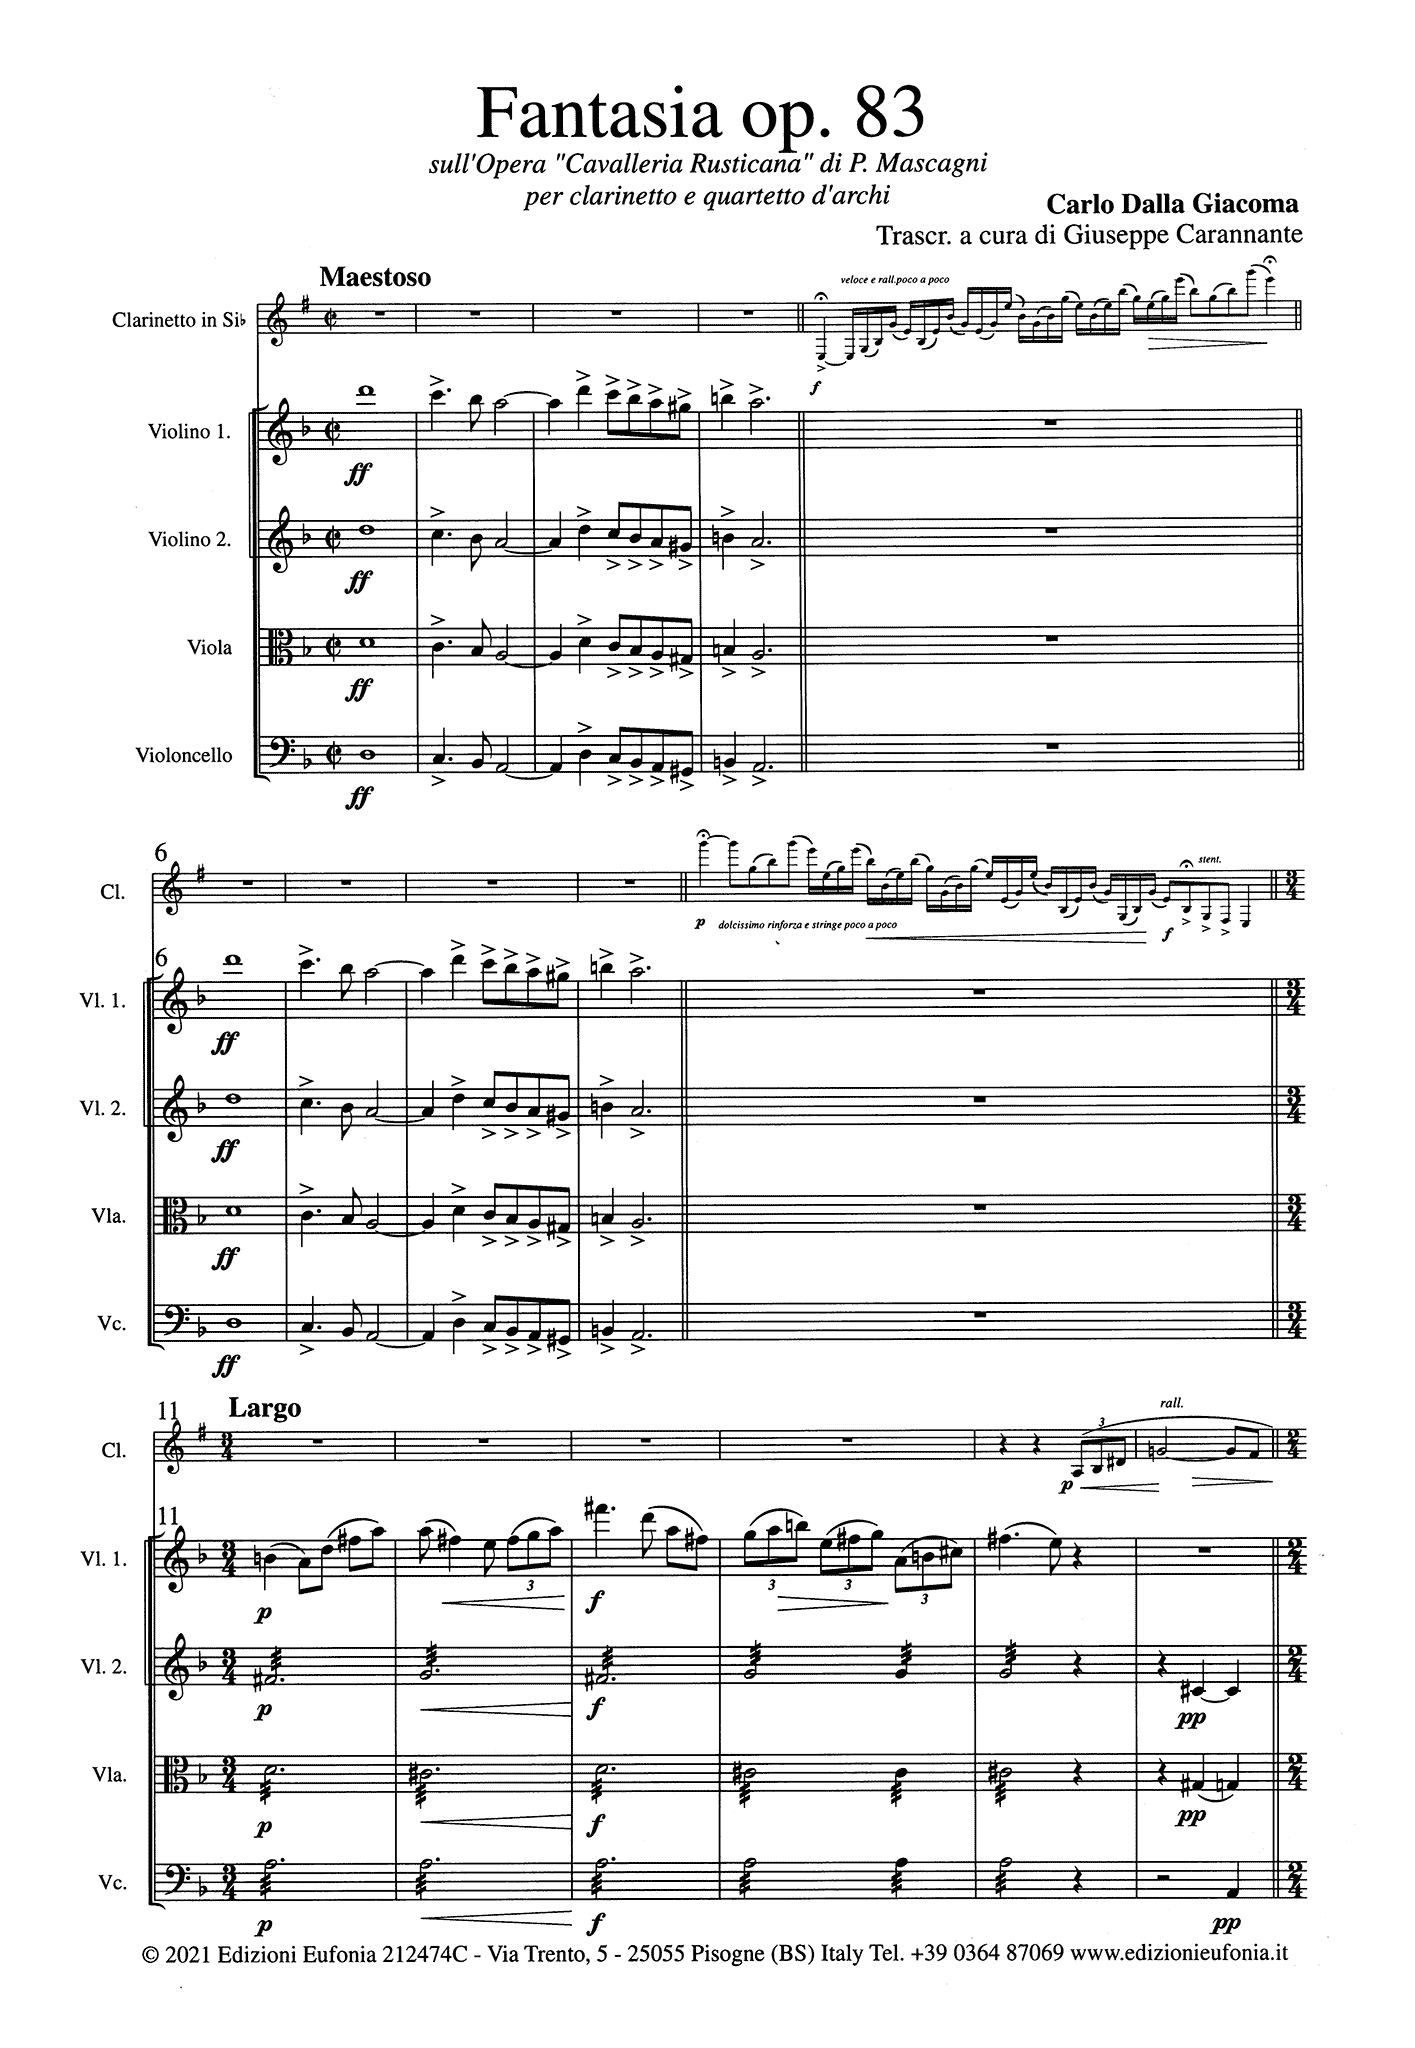 Giacoma Cavalleria rusticana Op. 83 clarinet and string quartet arrangement score